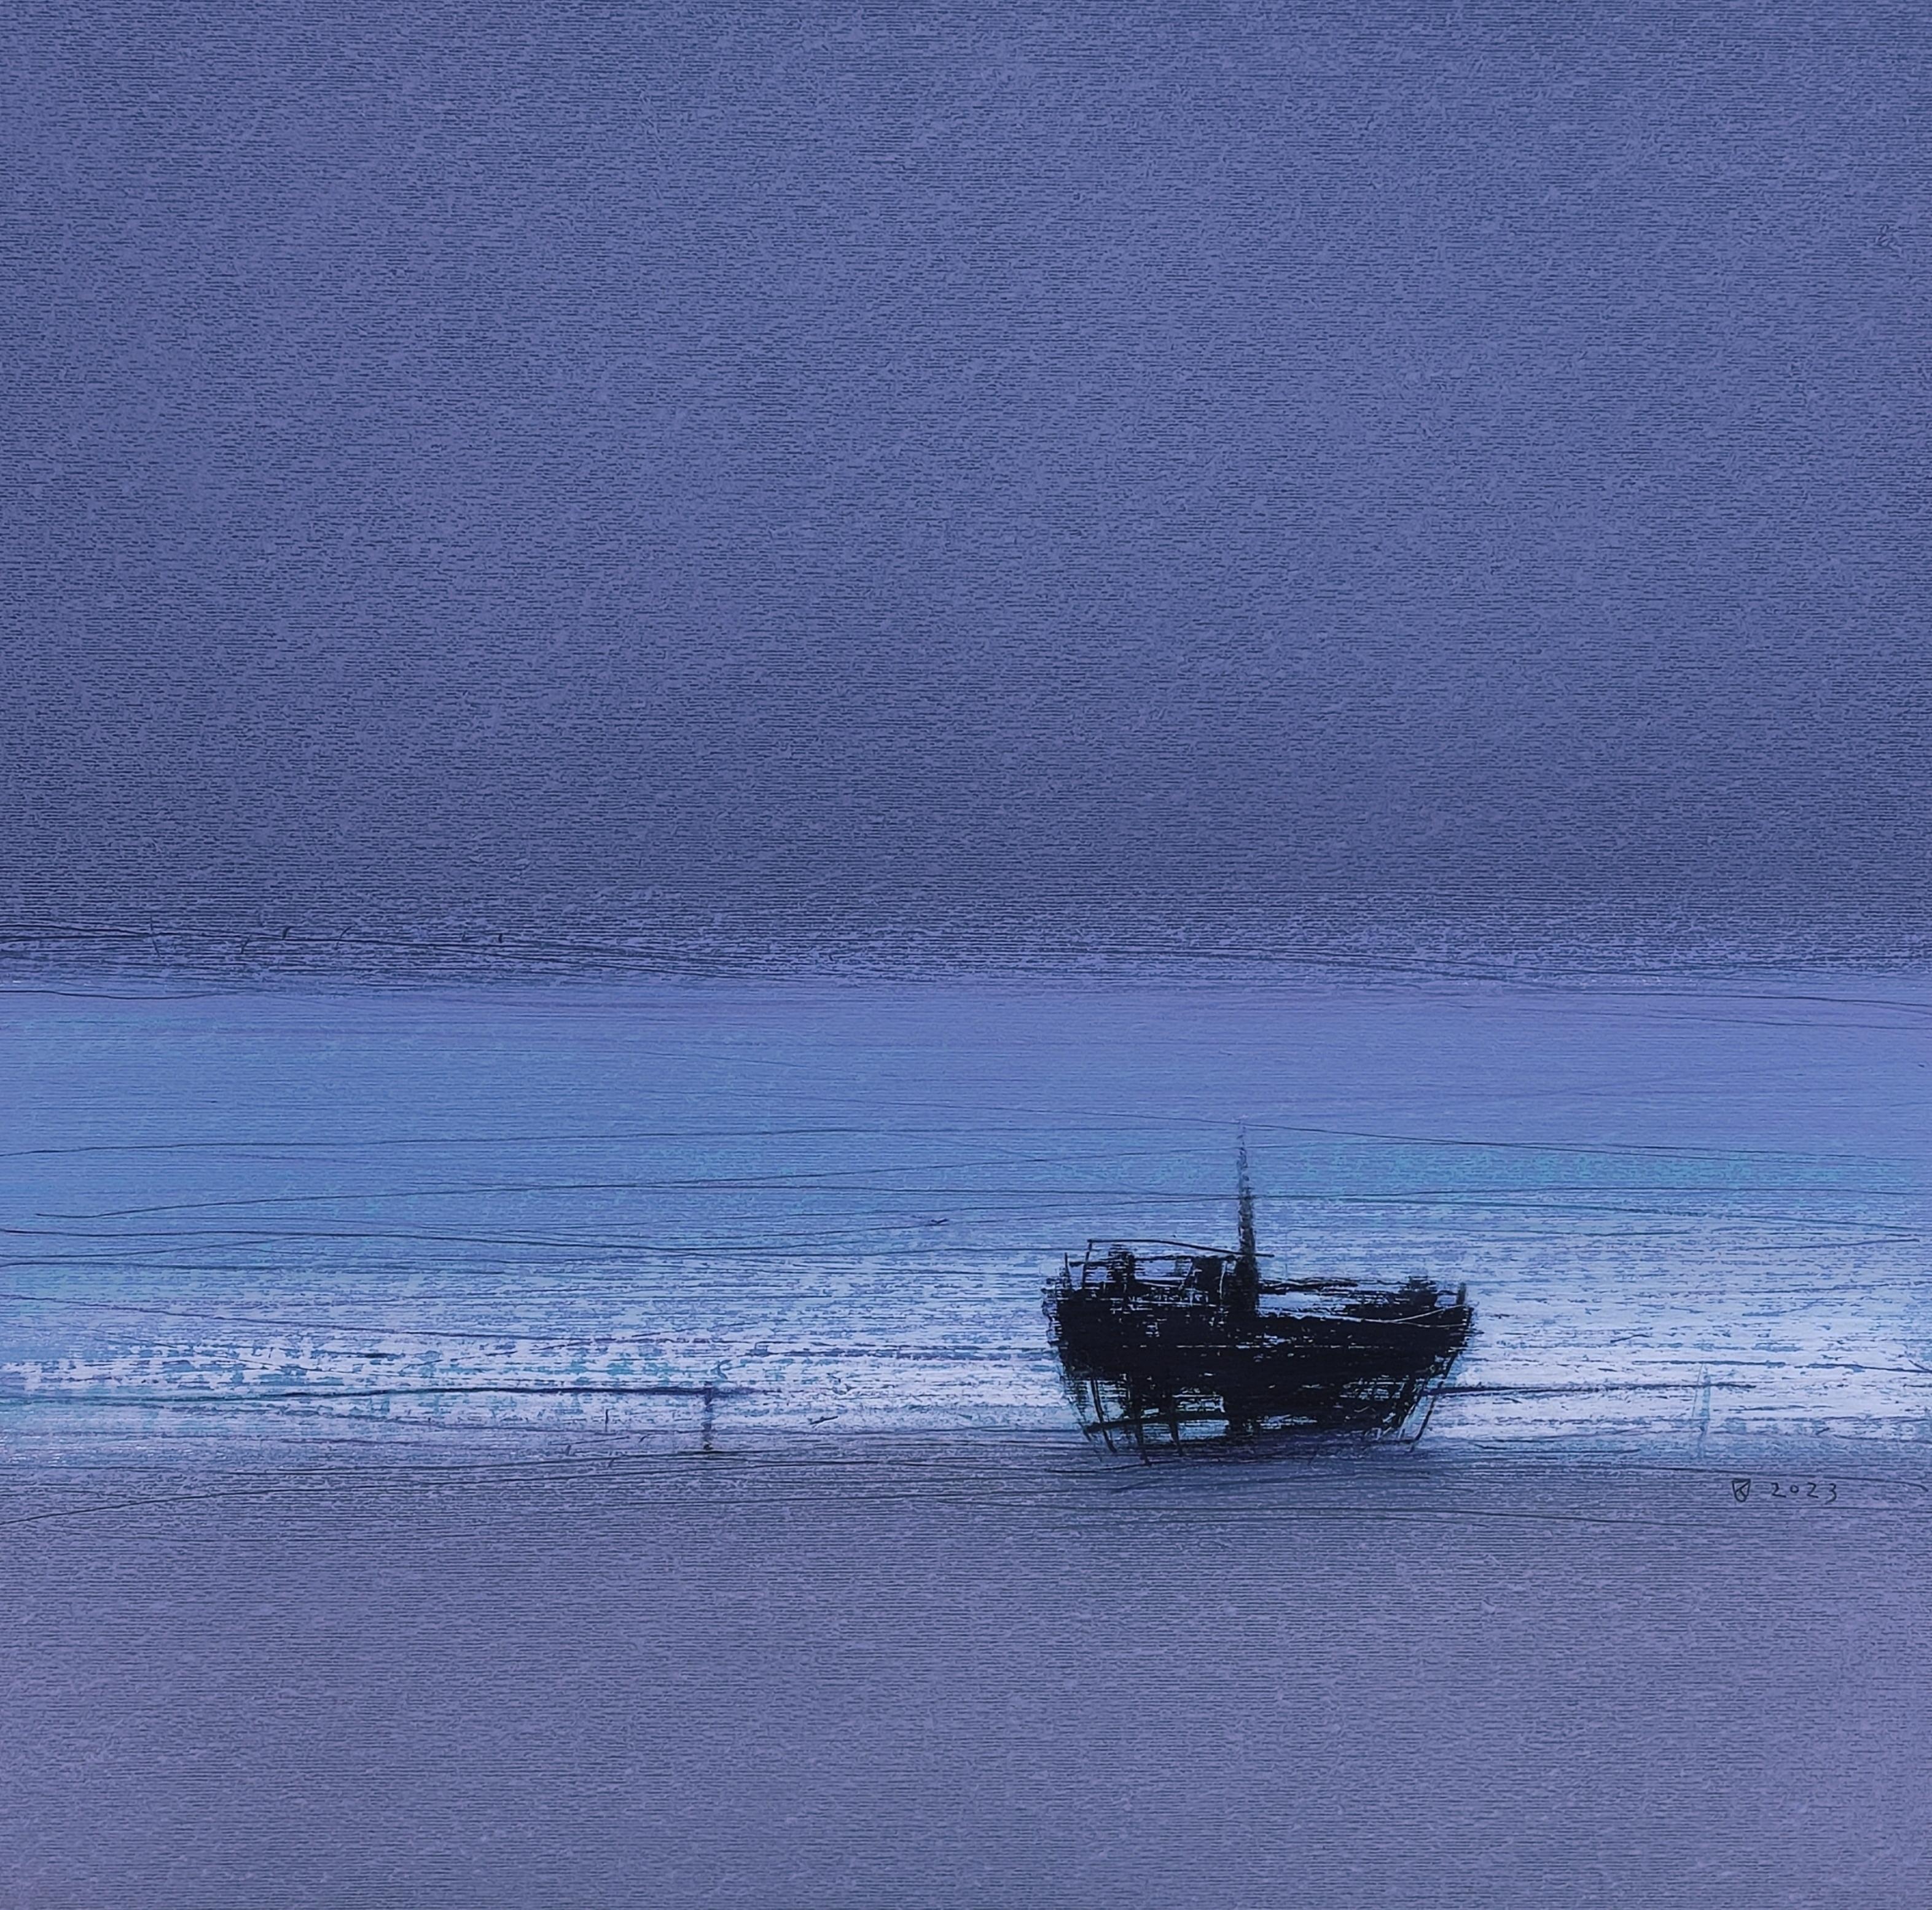 Janusz Kokot Landscape Art - Ship Wreck 2 (Blue) - Contemporary Atmospheric Sea Landscape Oil Pastel Painting